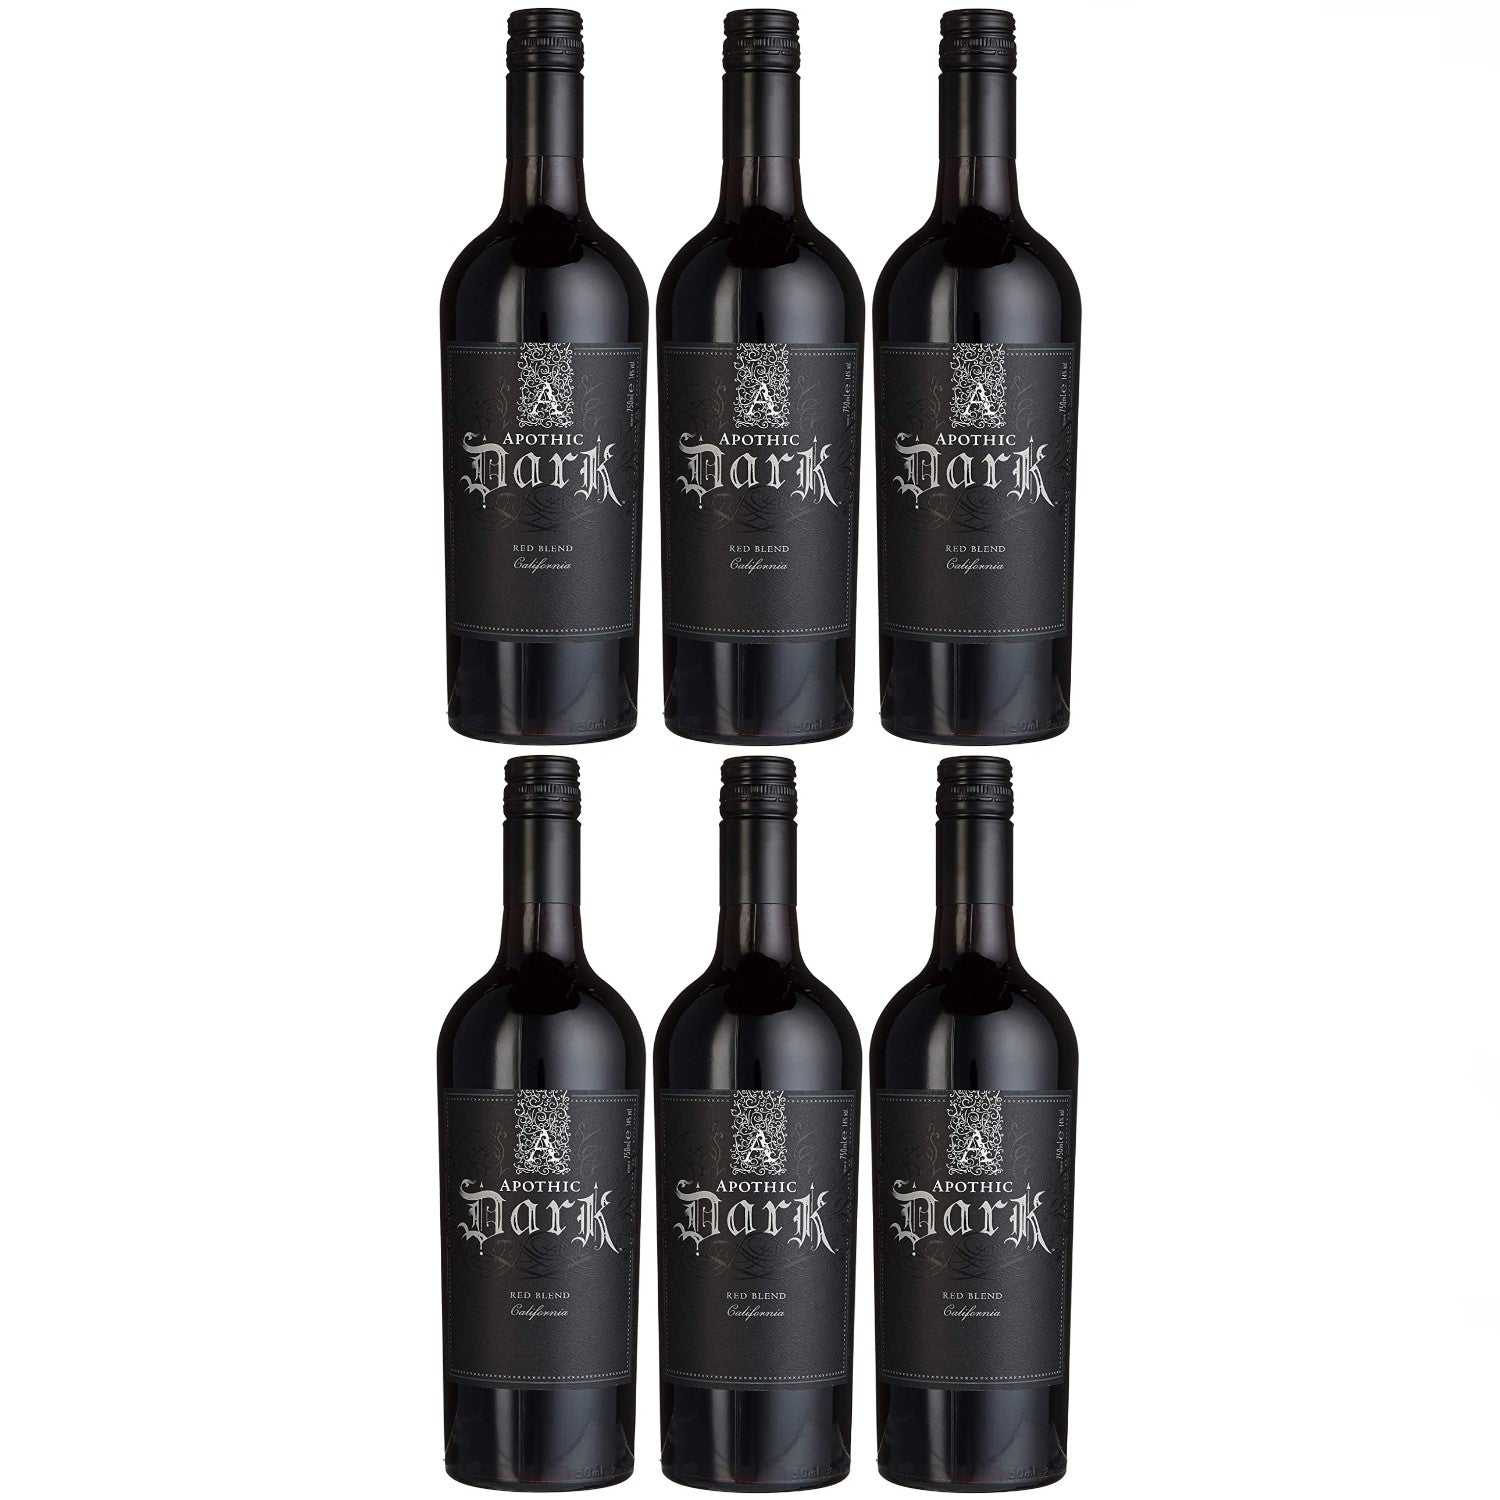 Apothic Dark Rotwein Cuvée Wein trocken Kalifornien (6 x 0.75l) - Versanel -